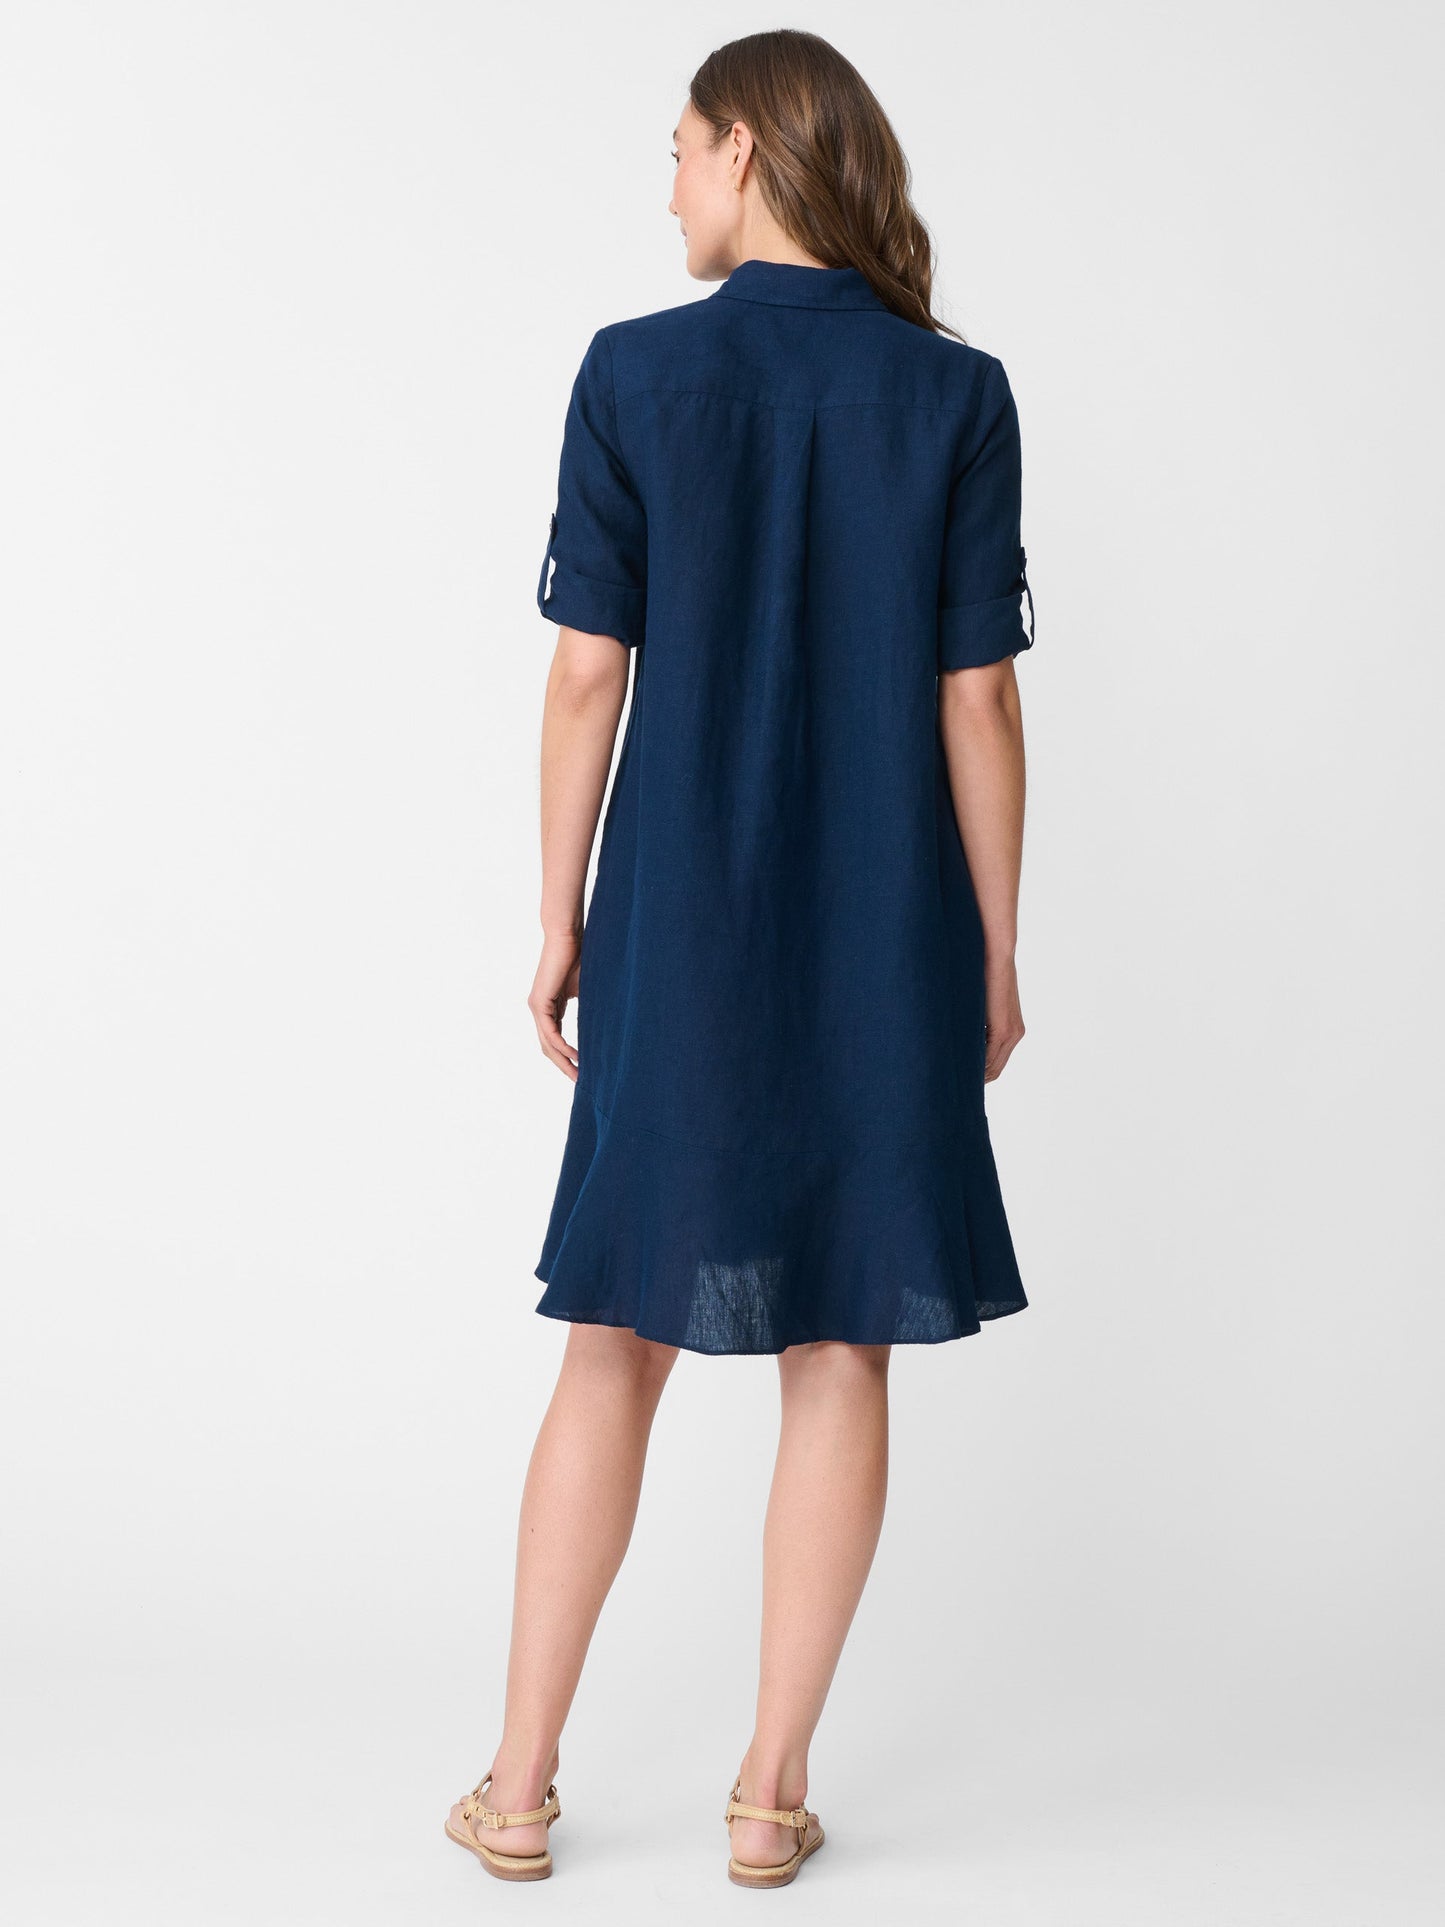 Wellesley Linen Dress